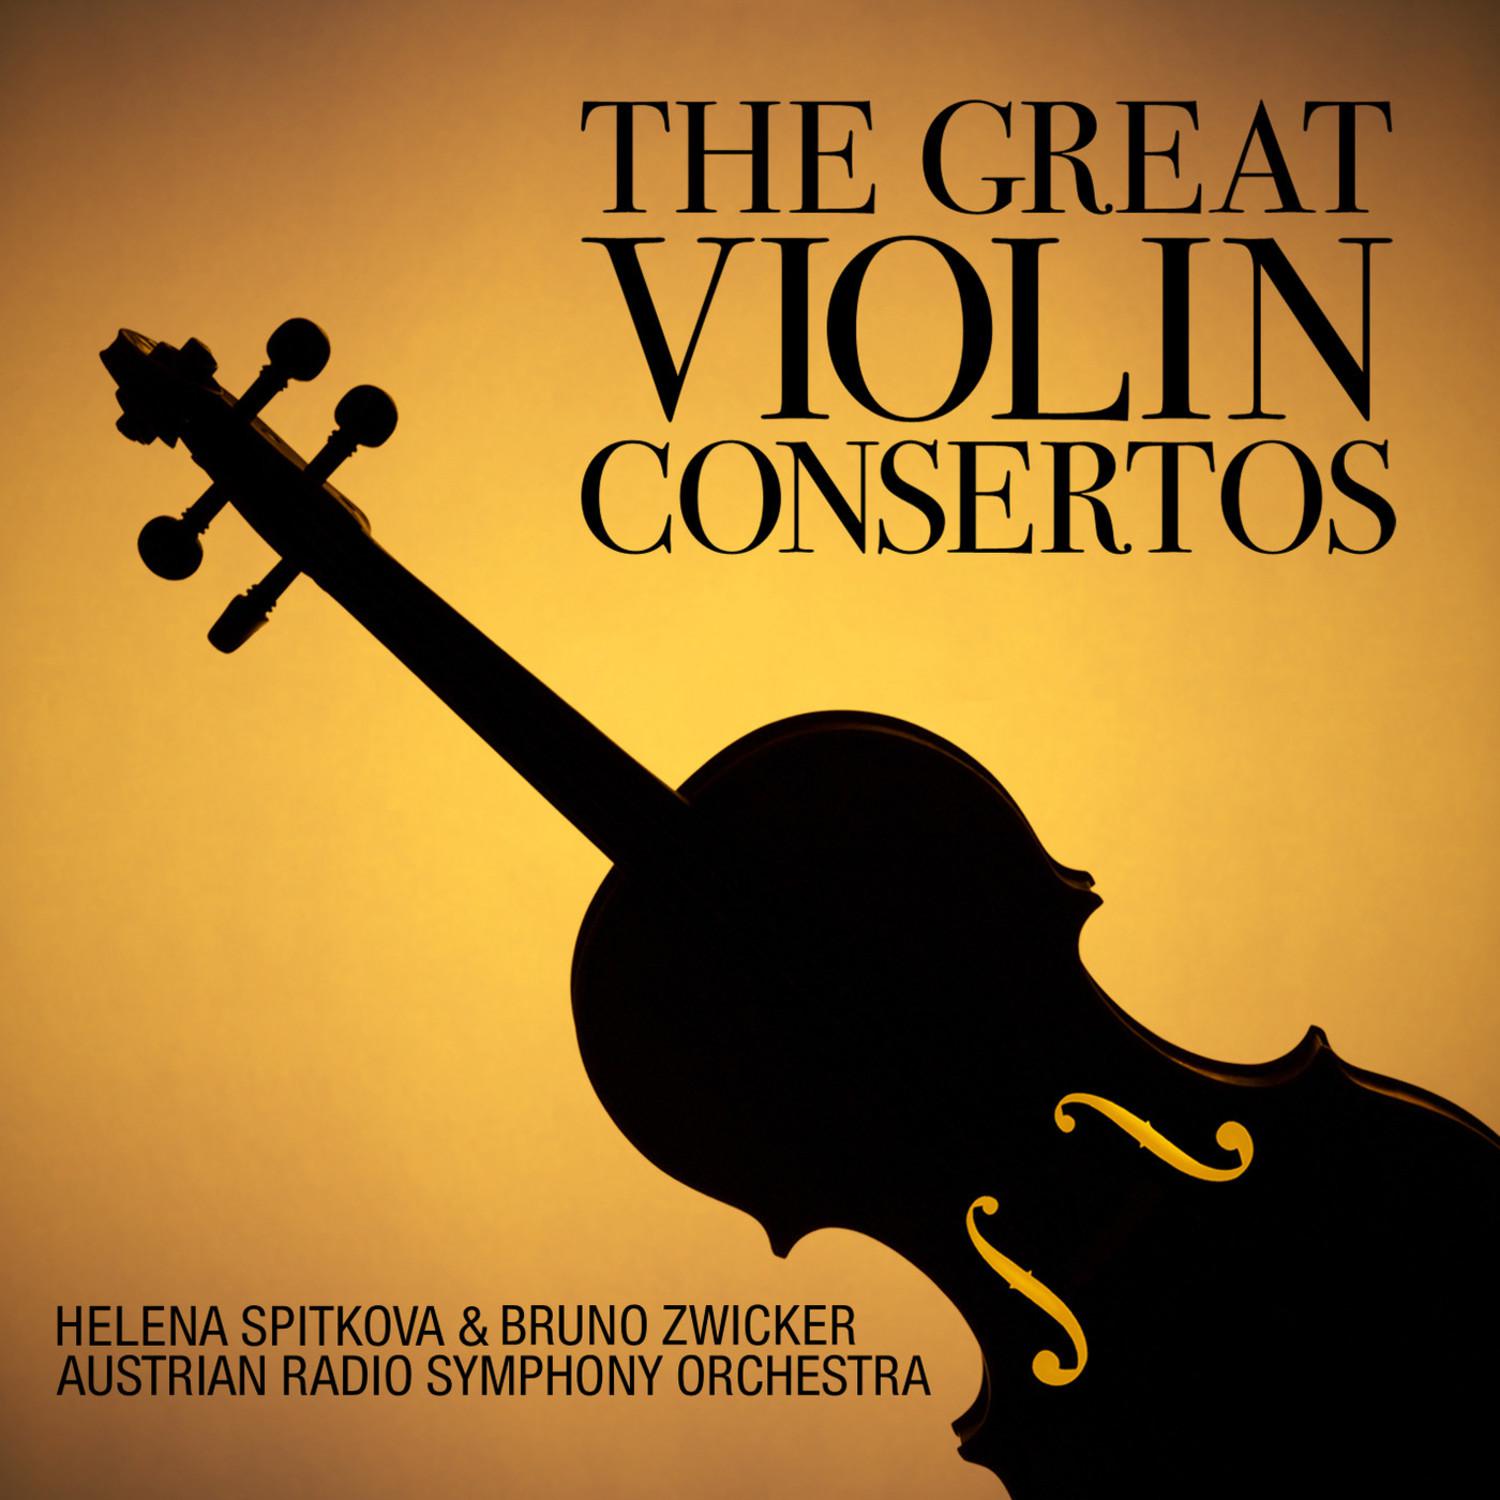 Concerto No. 2 in G Minor for Violin and Orchestra, Op. 63: I. Allegro moderato